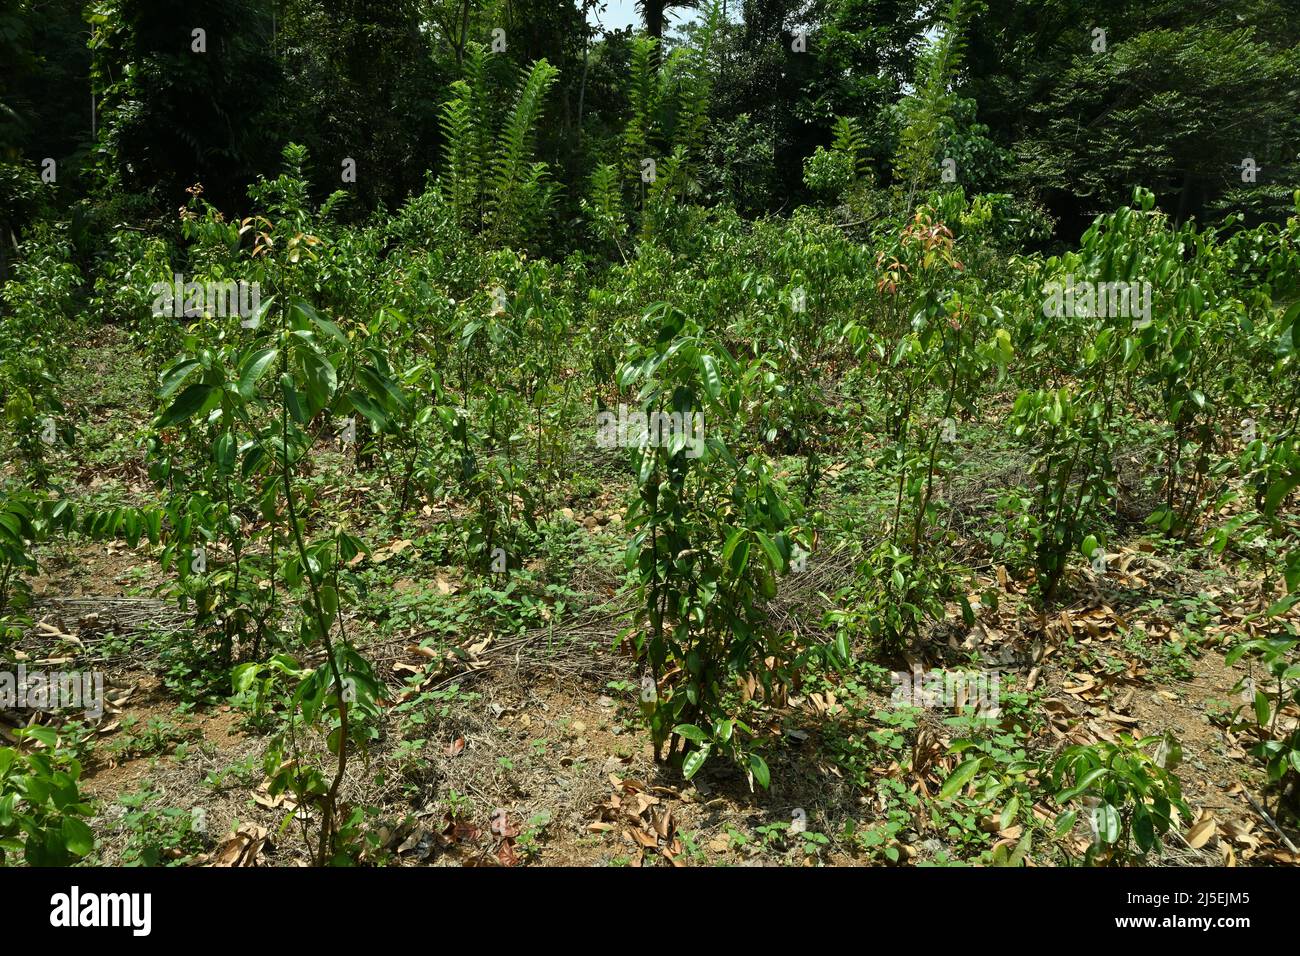 A Sri Lankan Cinnamon plantation with growing young Cinnamon plants Stock Photo